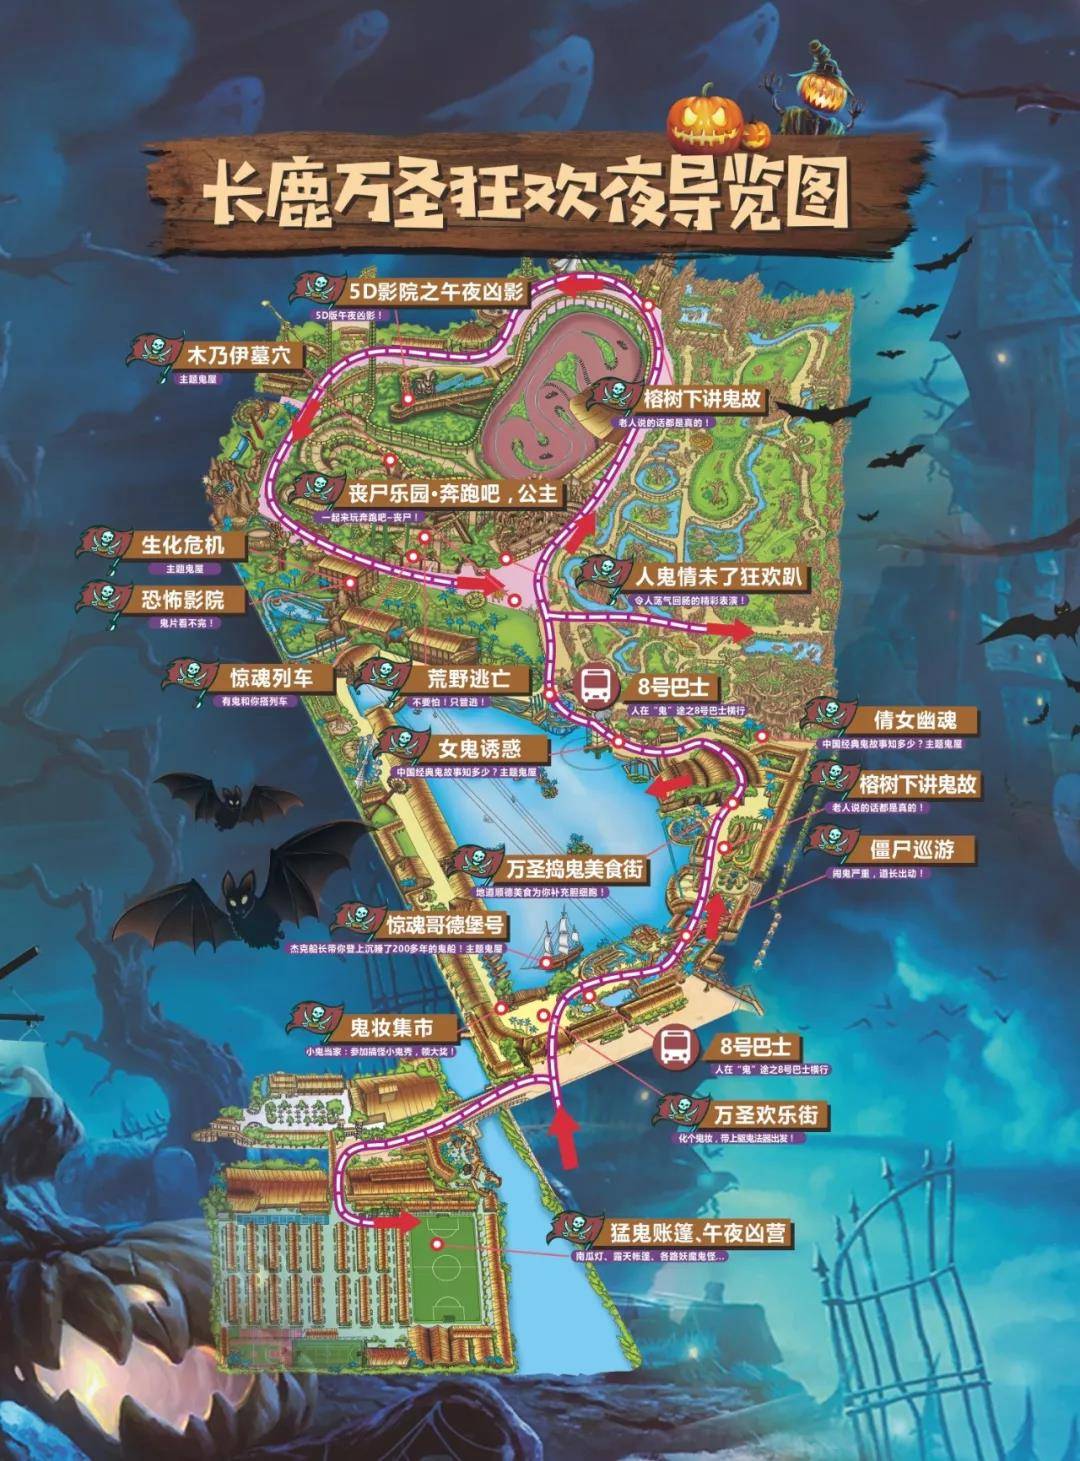 佛山顺德长鹿农庄地图图片